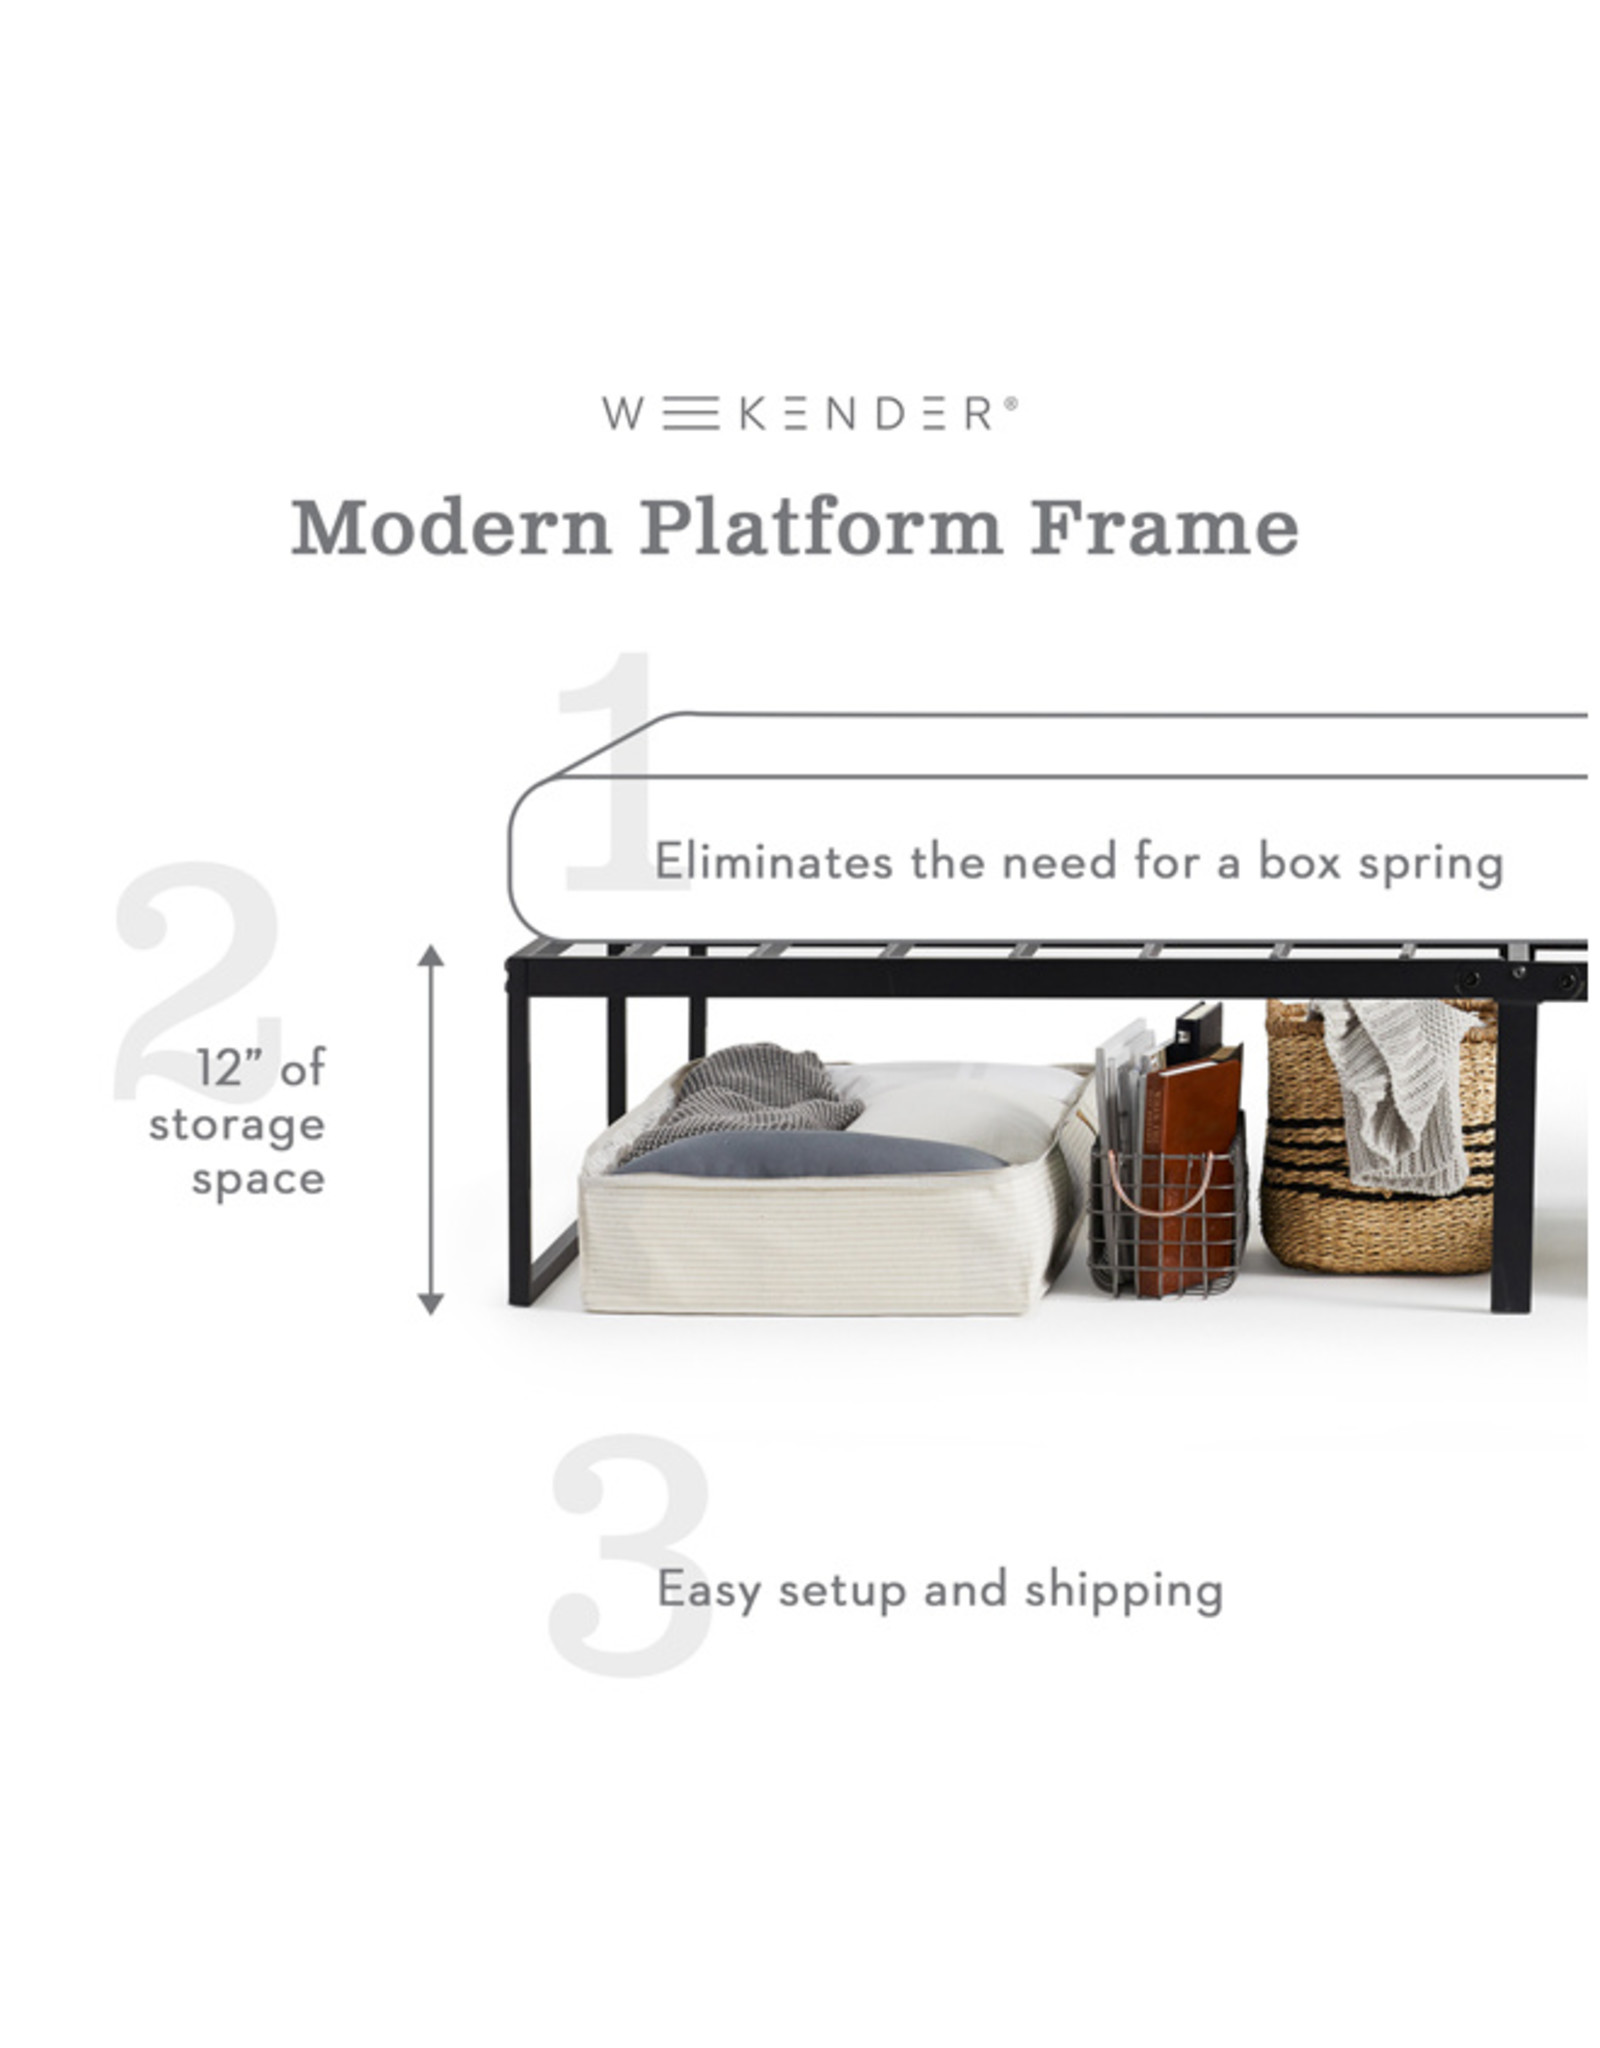 Malouf Weekender Modern Platform Frame